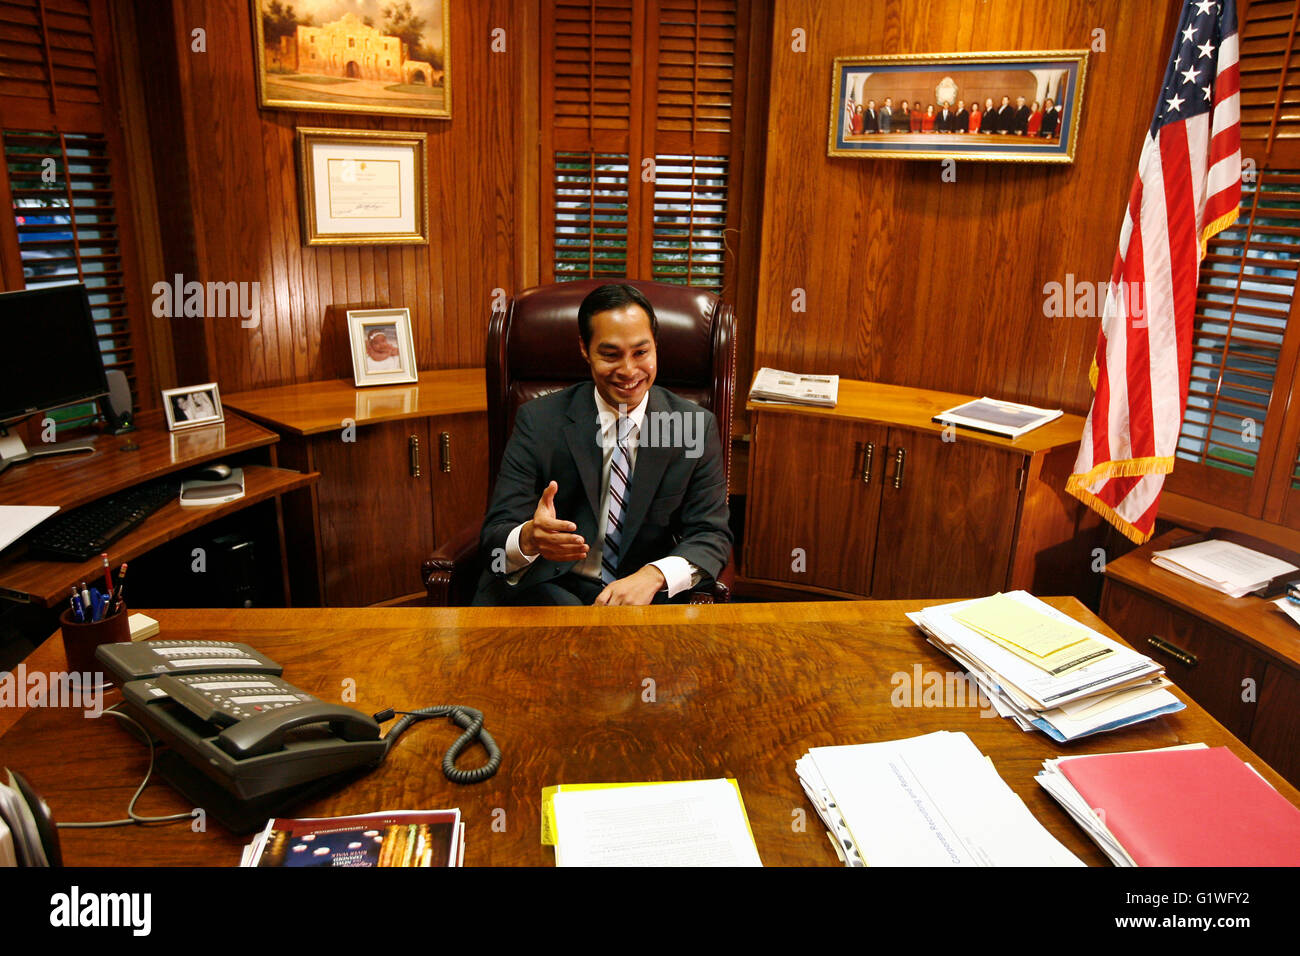 El alcalde de San Antonio Julián Castro en su oficina en San Antonio, Texas. Foto de stock